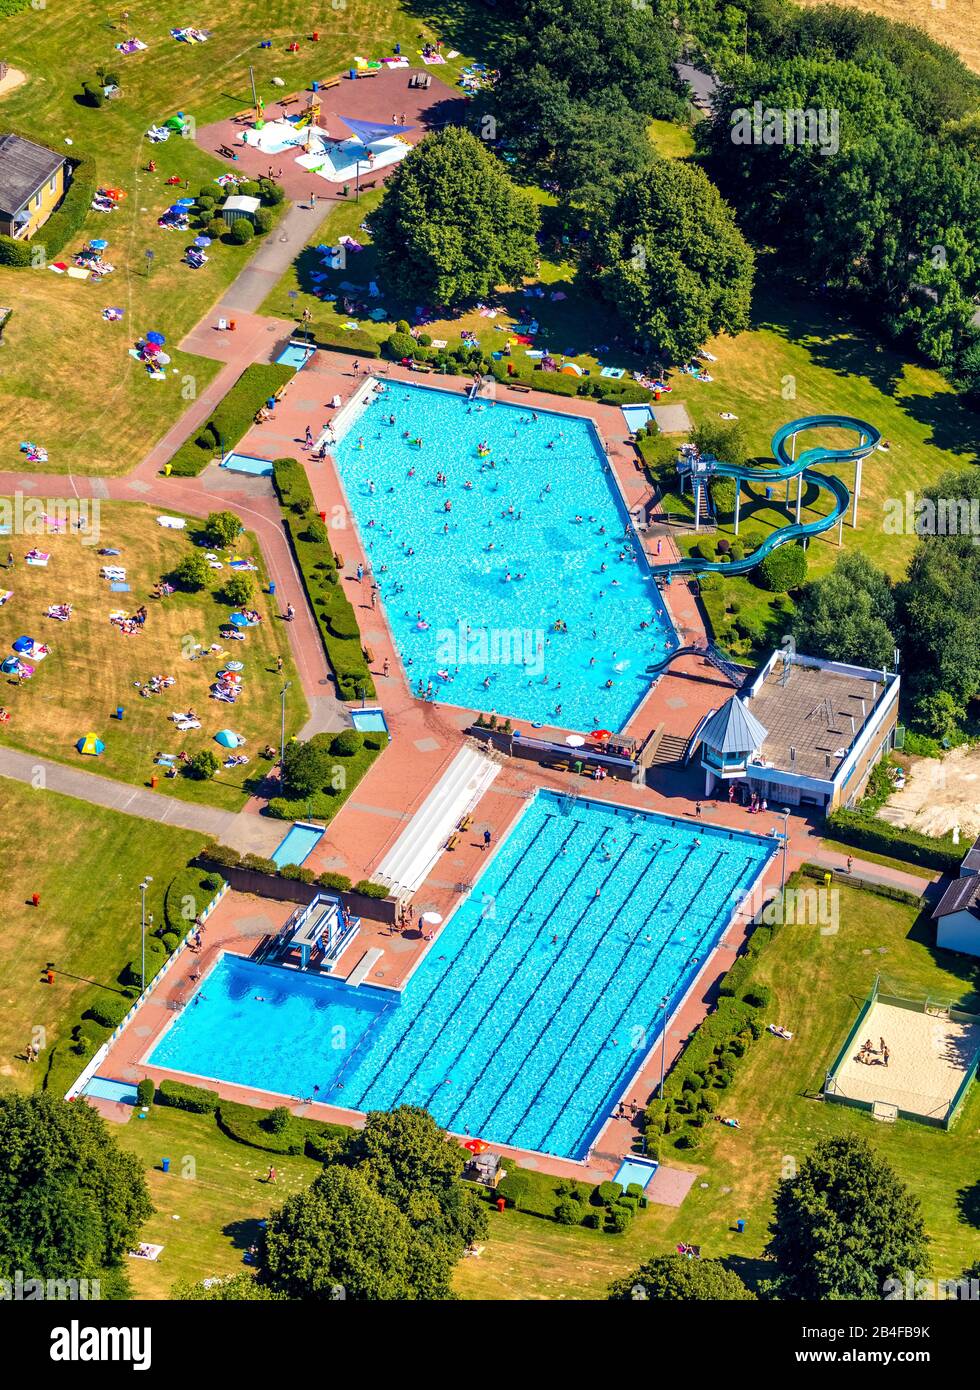 Vista aerea della piscina all'aperto e della piscina pubblica HeljensBad con piscina, piscina a corsie e area solarium a Heiligenhaus nella zona della Ruhr, nello stato federale della Renania Settentrionale-Vestfalia in Germania. Foto Stock